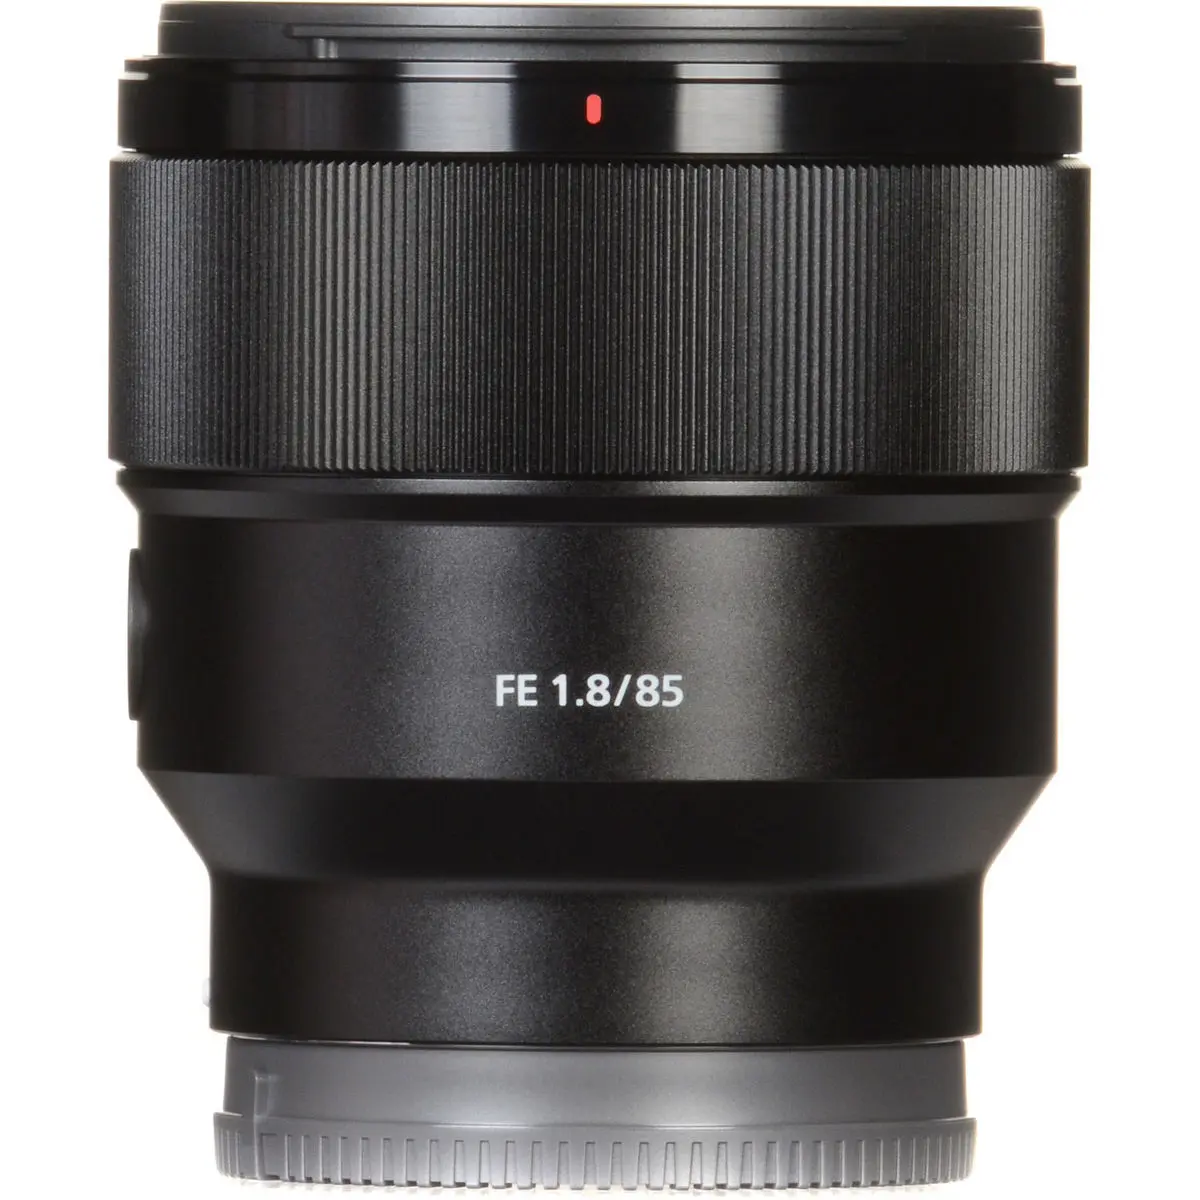 3. Sony FE 85mm F1.8 F/1.8 SEL85F18 E-Mount Full Frame Lens